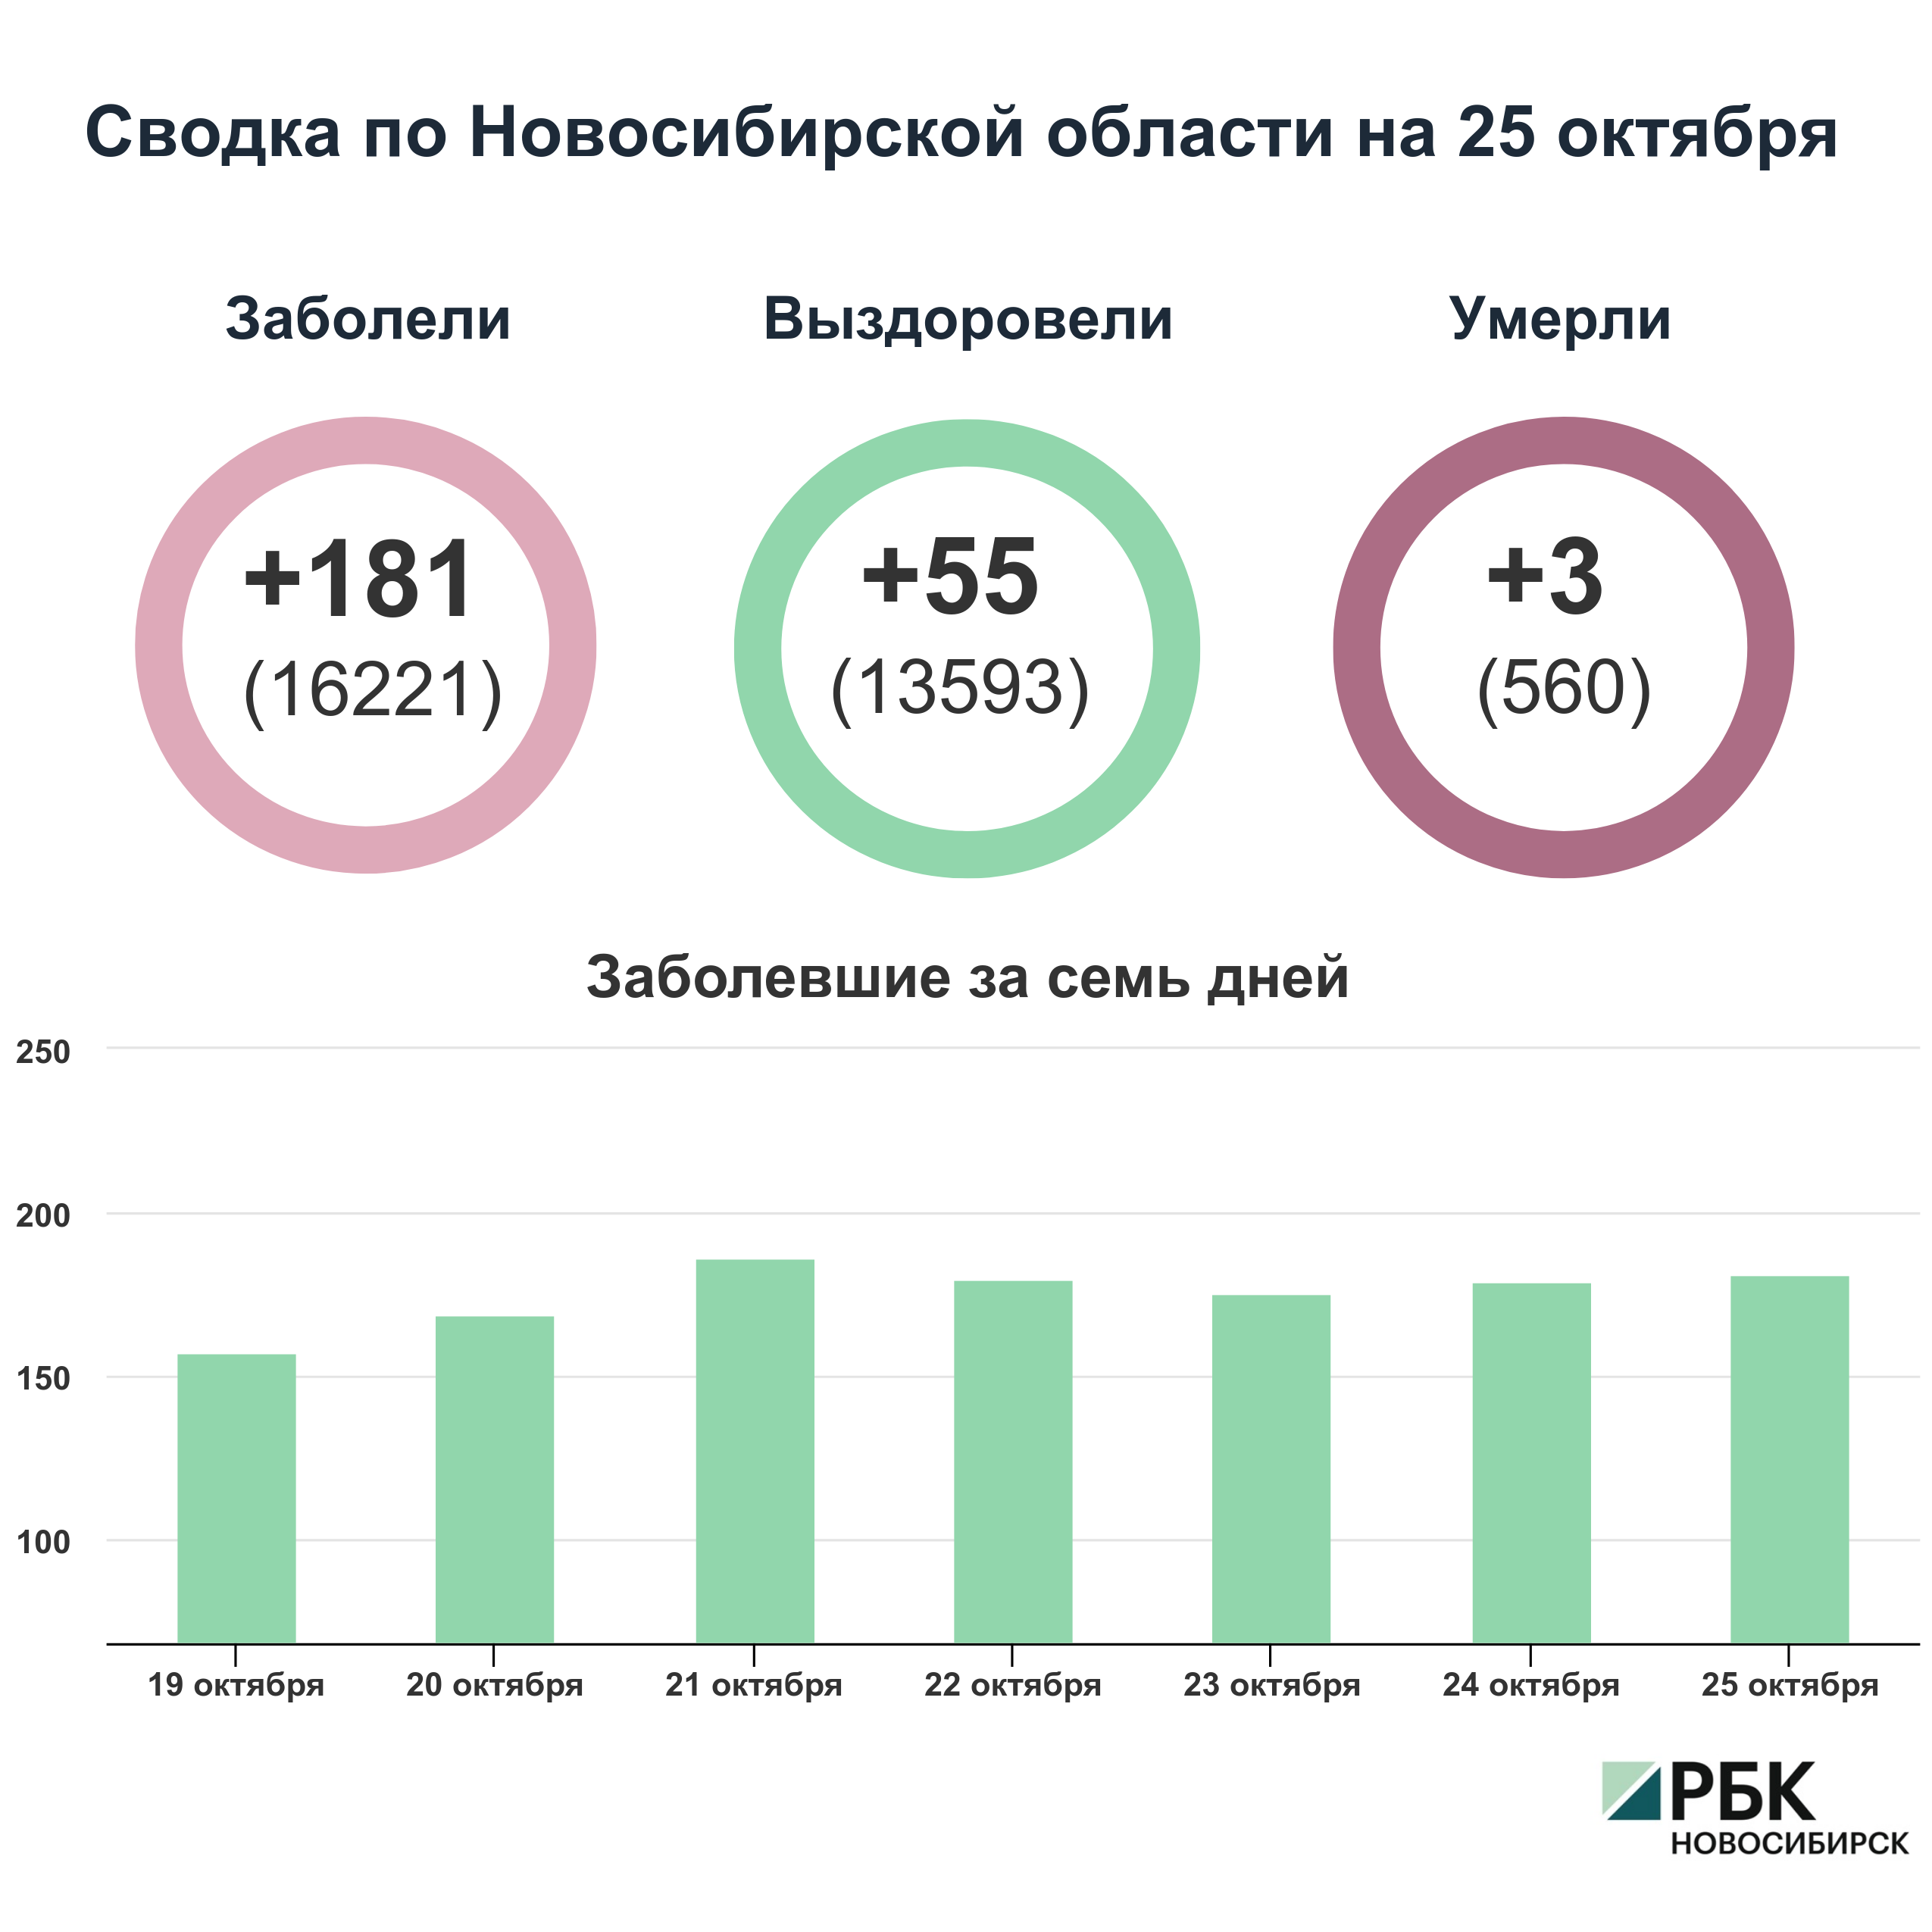 Коронавирус в Новосибирске: сводка на 25 октября